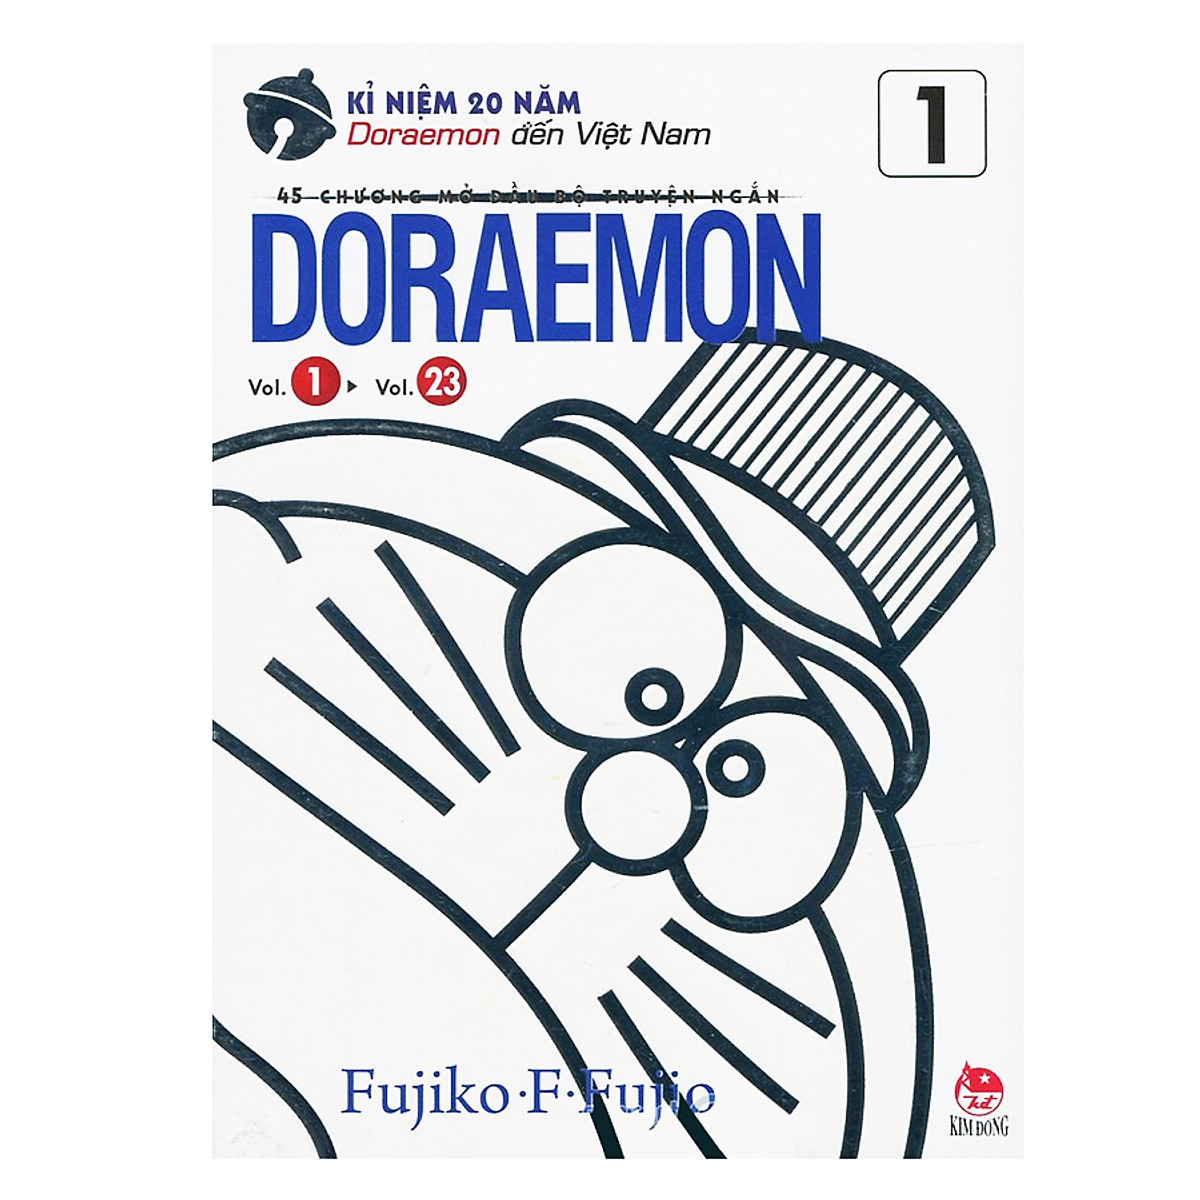 Doraemon - 45 Chương Mở Đầu Bộ Truyện Ngắn - (Kỉ Niệm 20 Năm Doraemon Đến Việt Nam